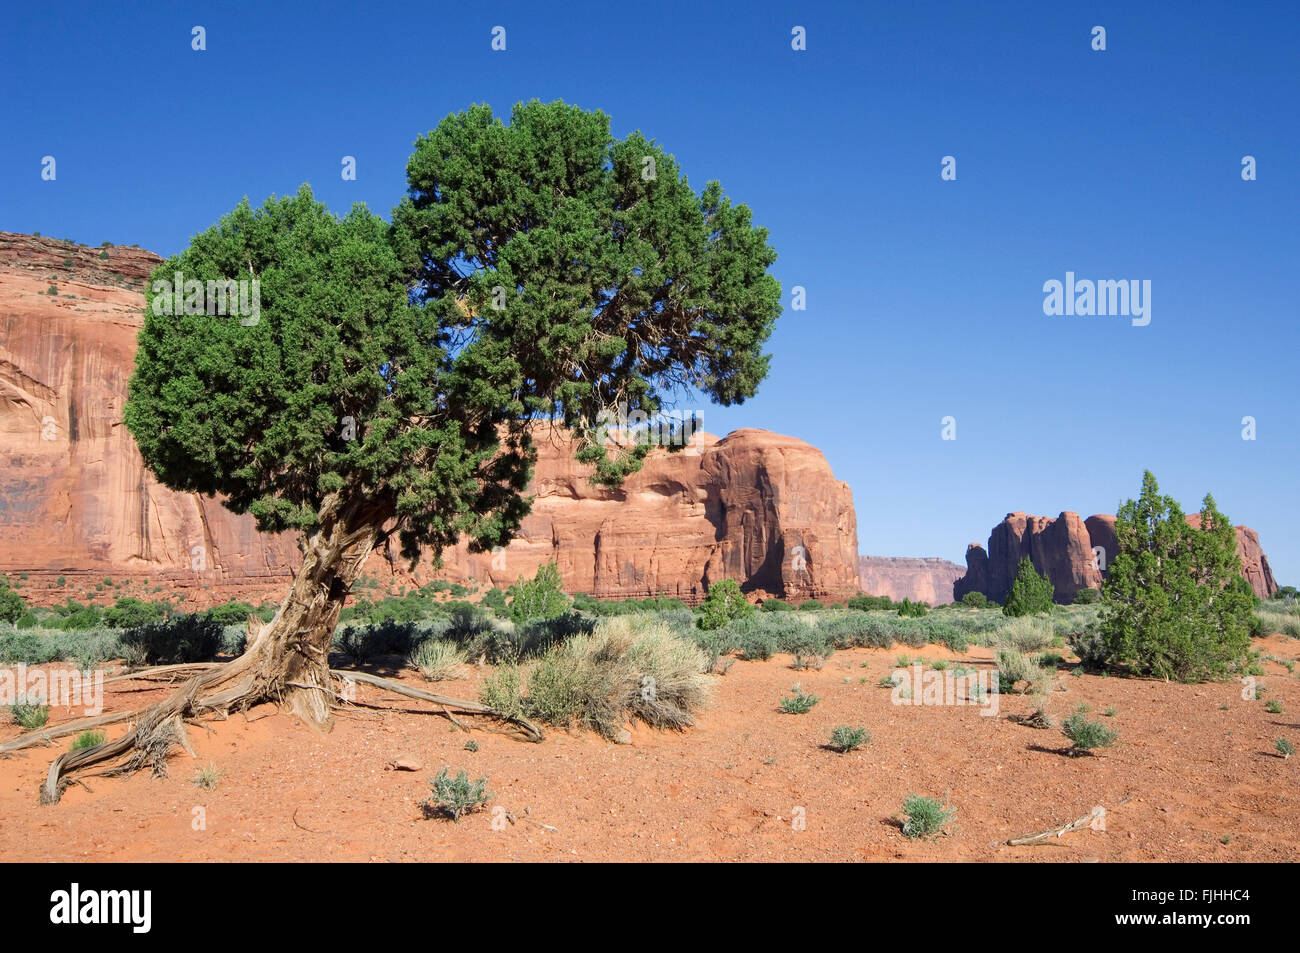 Utah Juniper (Juniperus osteosperma / Juniperus utahensis) in the Monument Valley Navajo Tribal Park, Arizona, USA Stock Photo